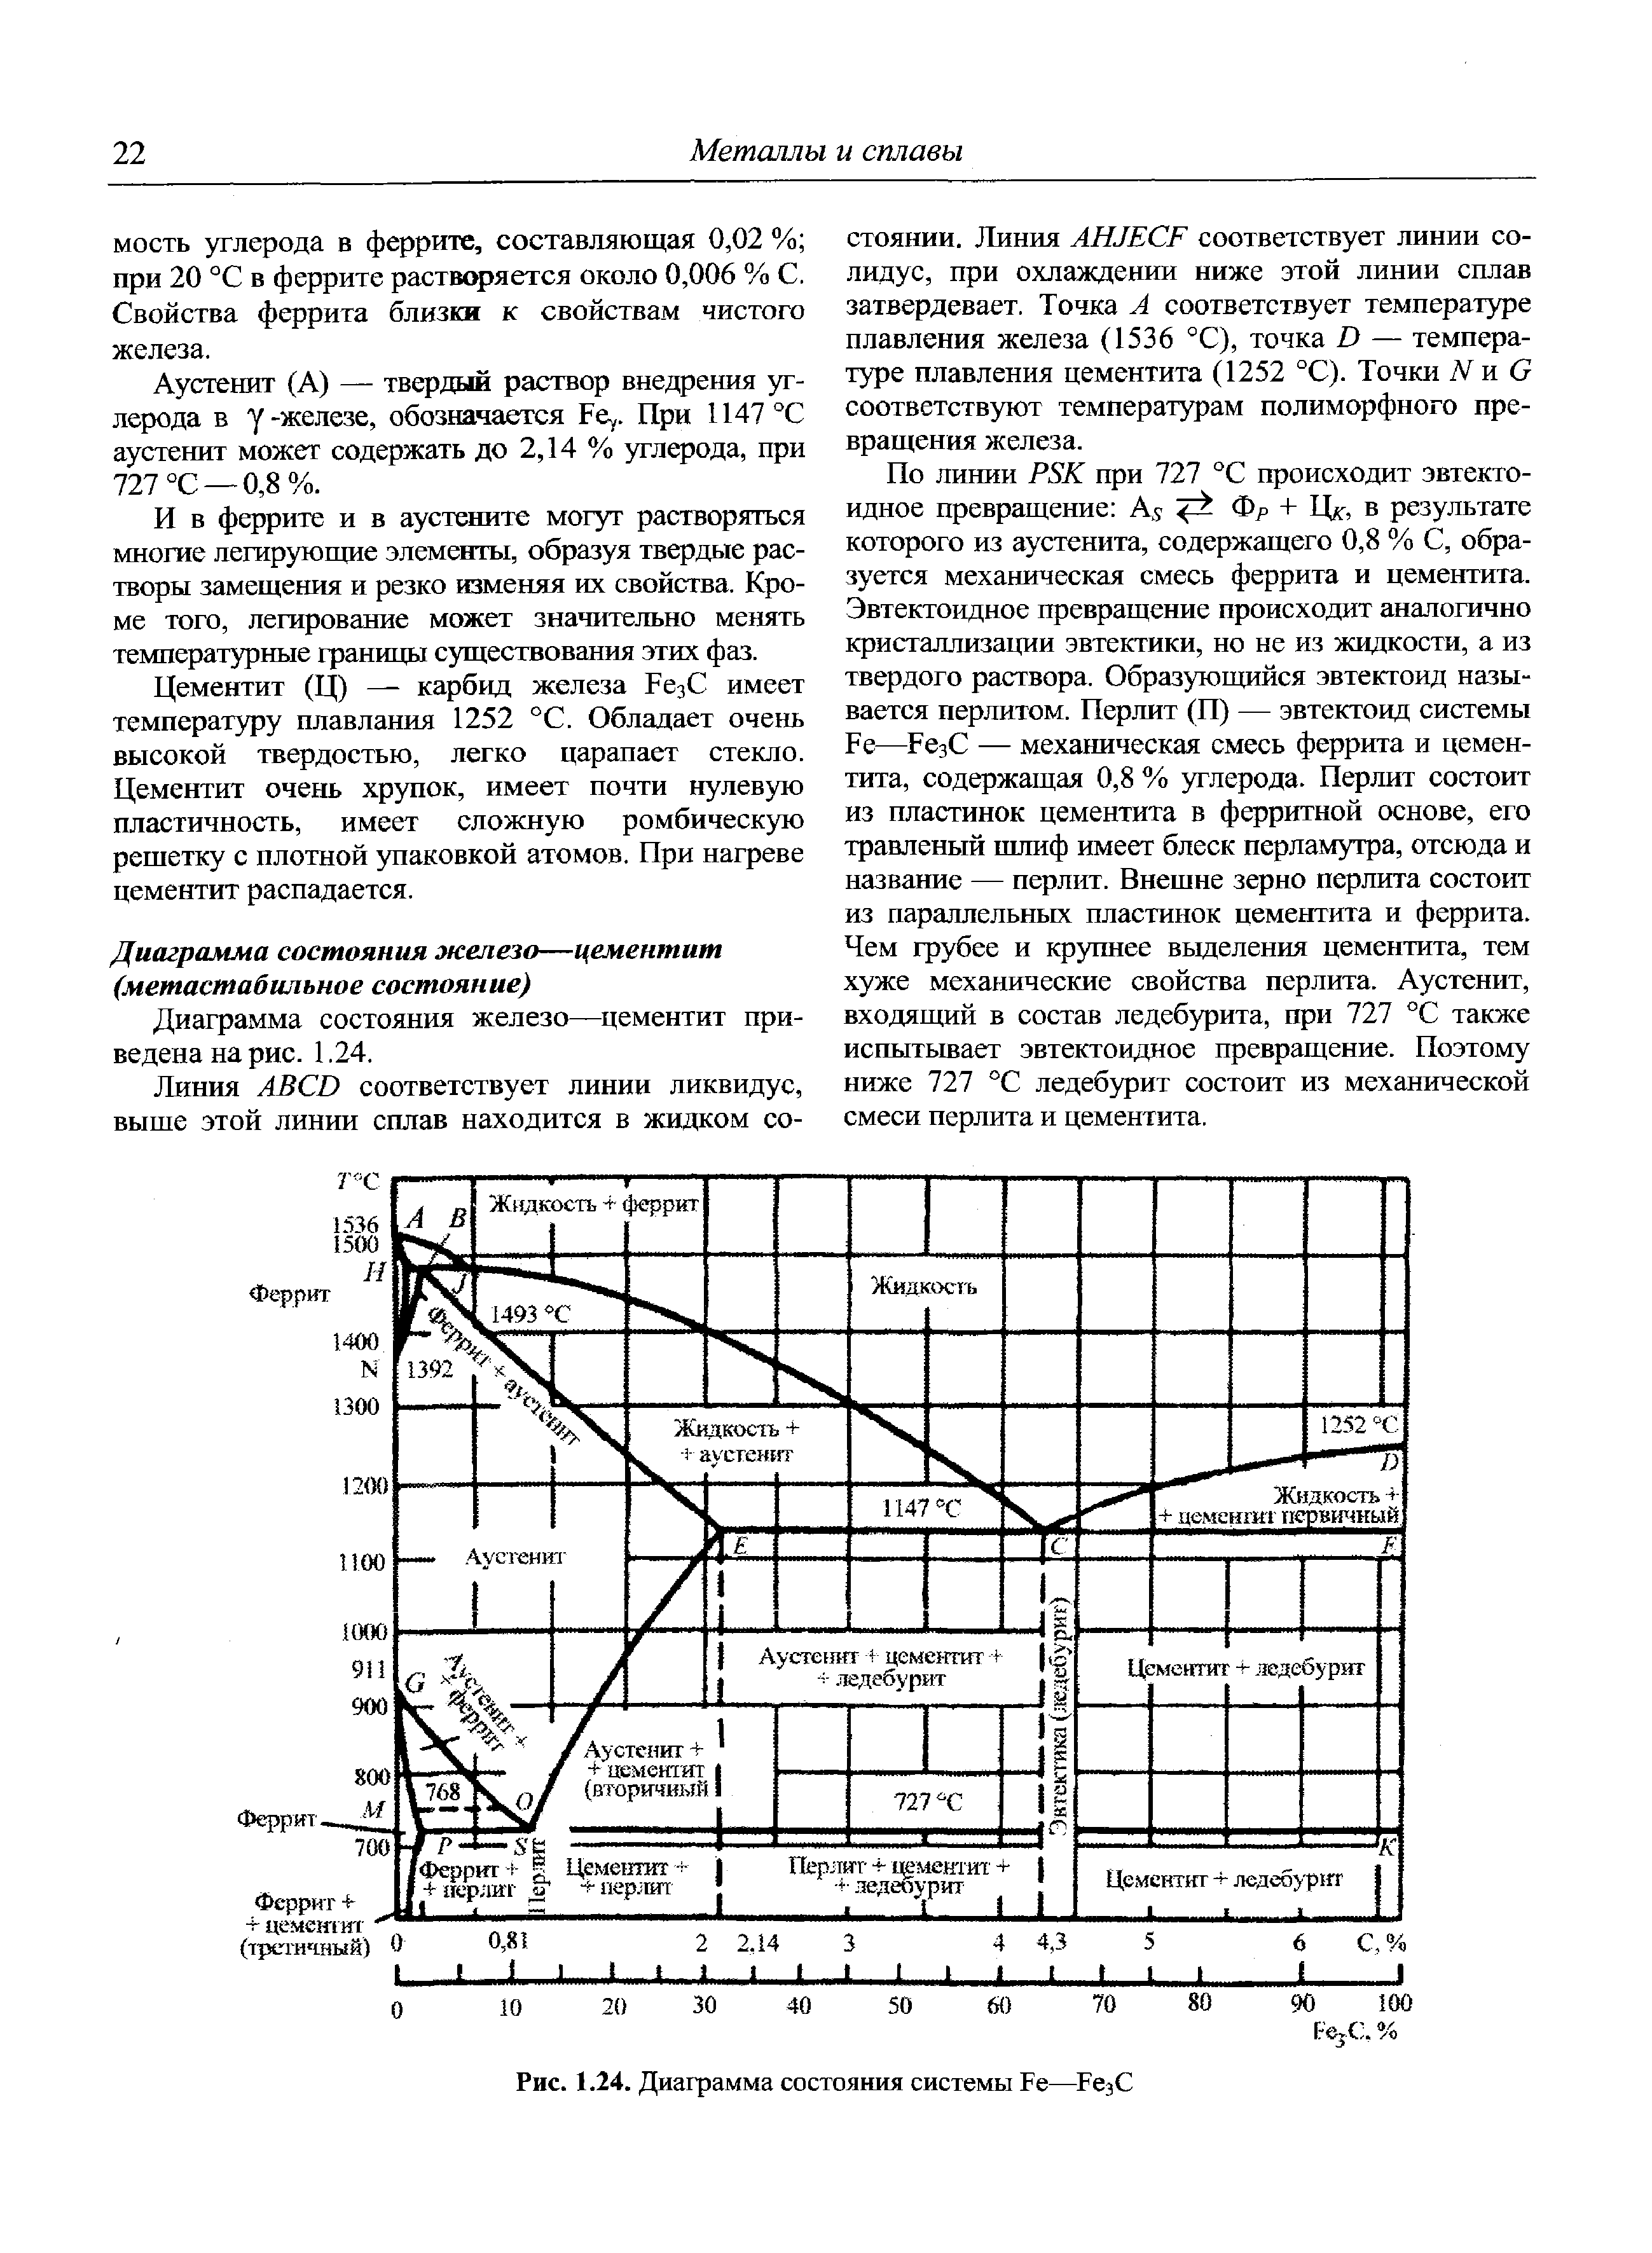 Диаграмма состояния железо—цементит приведена на рис. 1.24.
